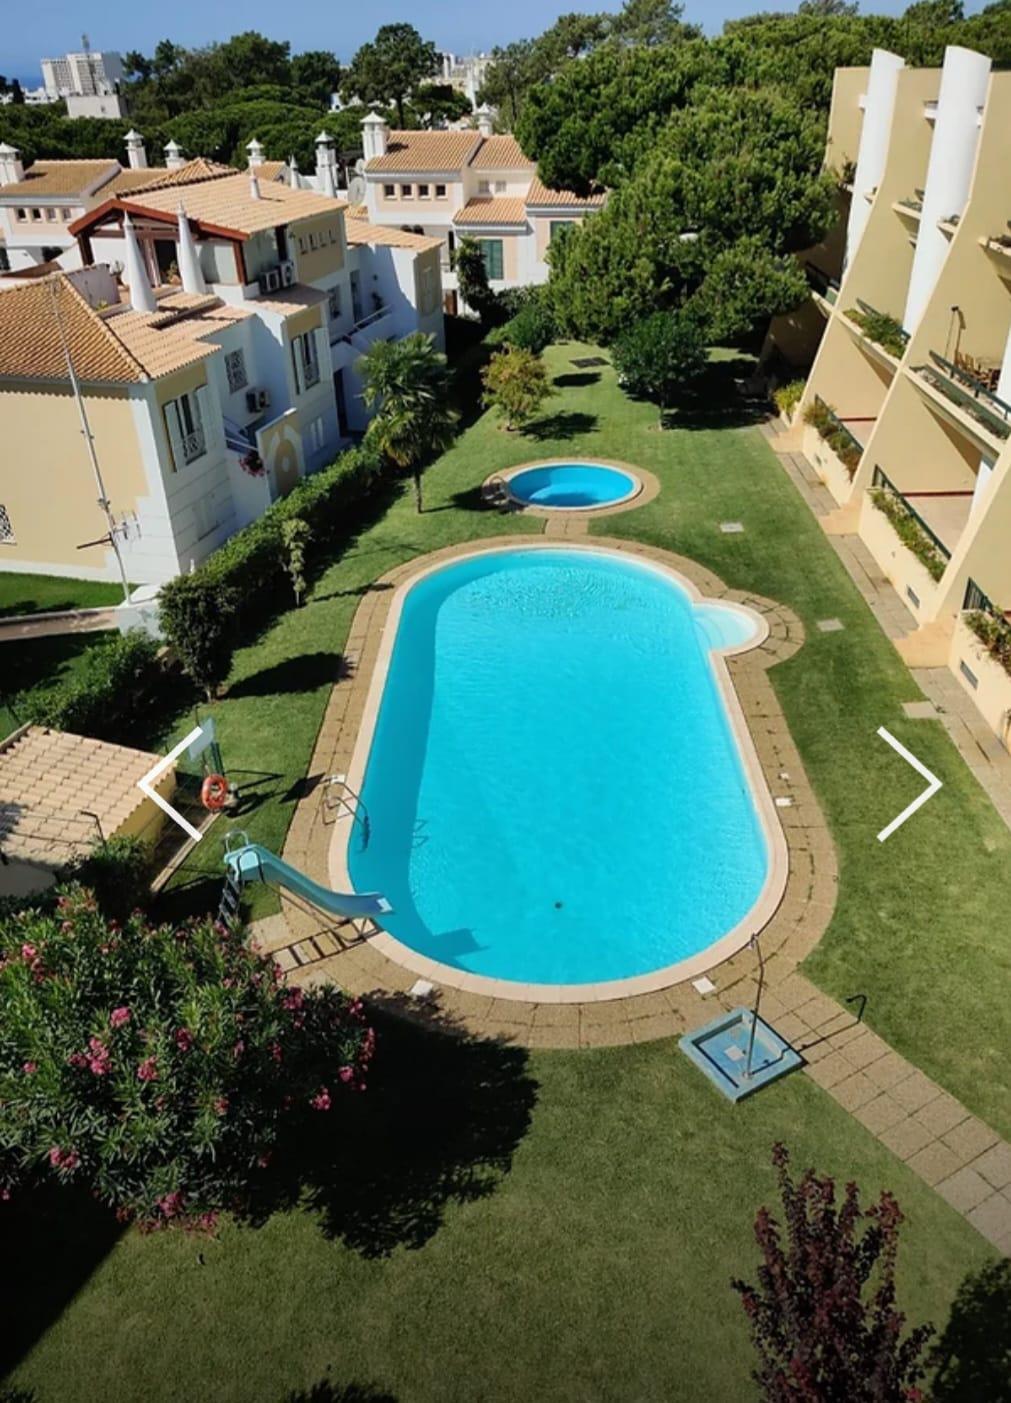 2 bedroom apartment in condominium with pool in Vilamoura 